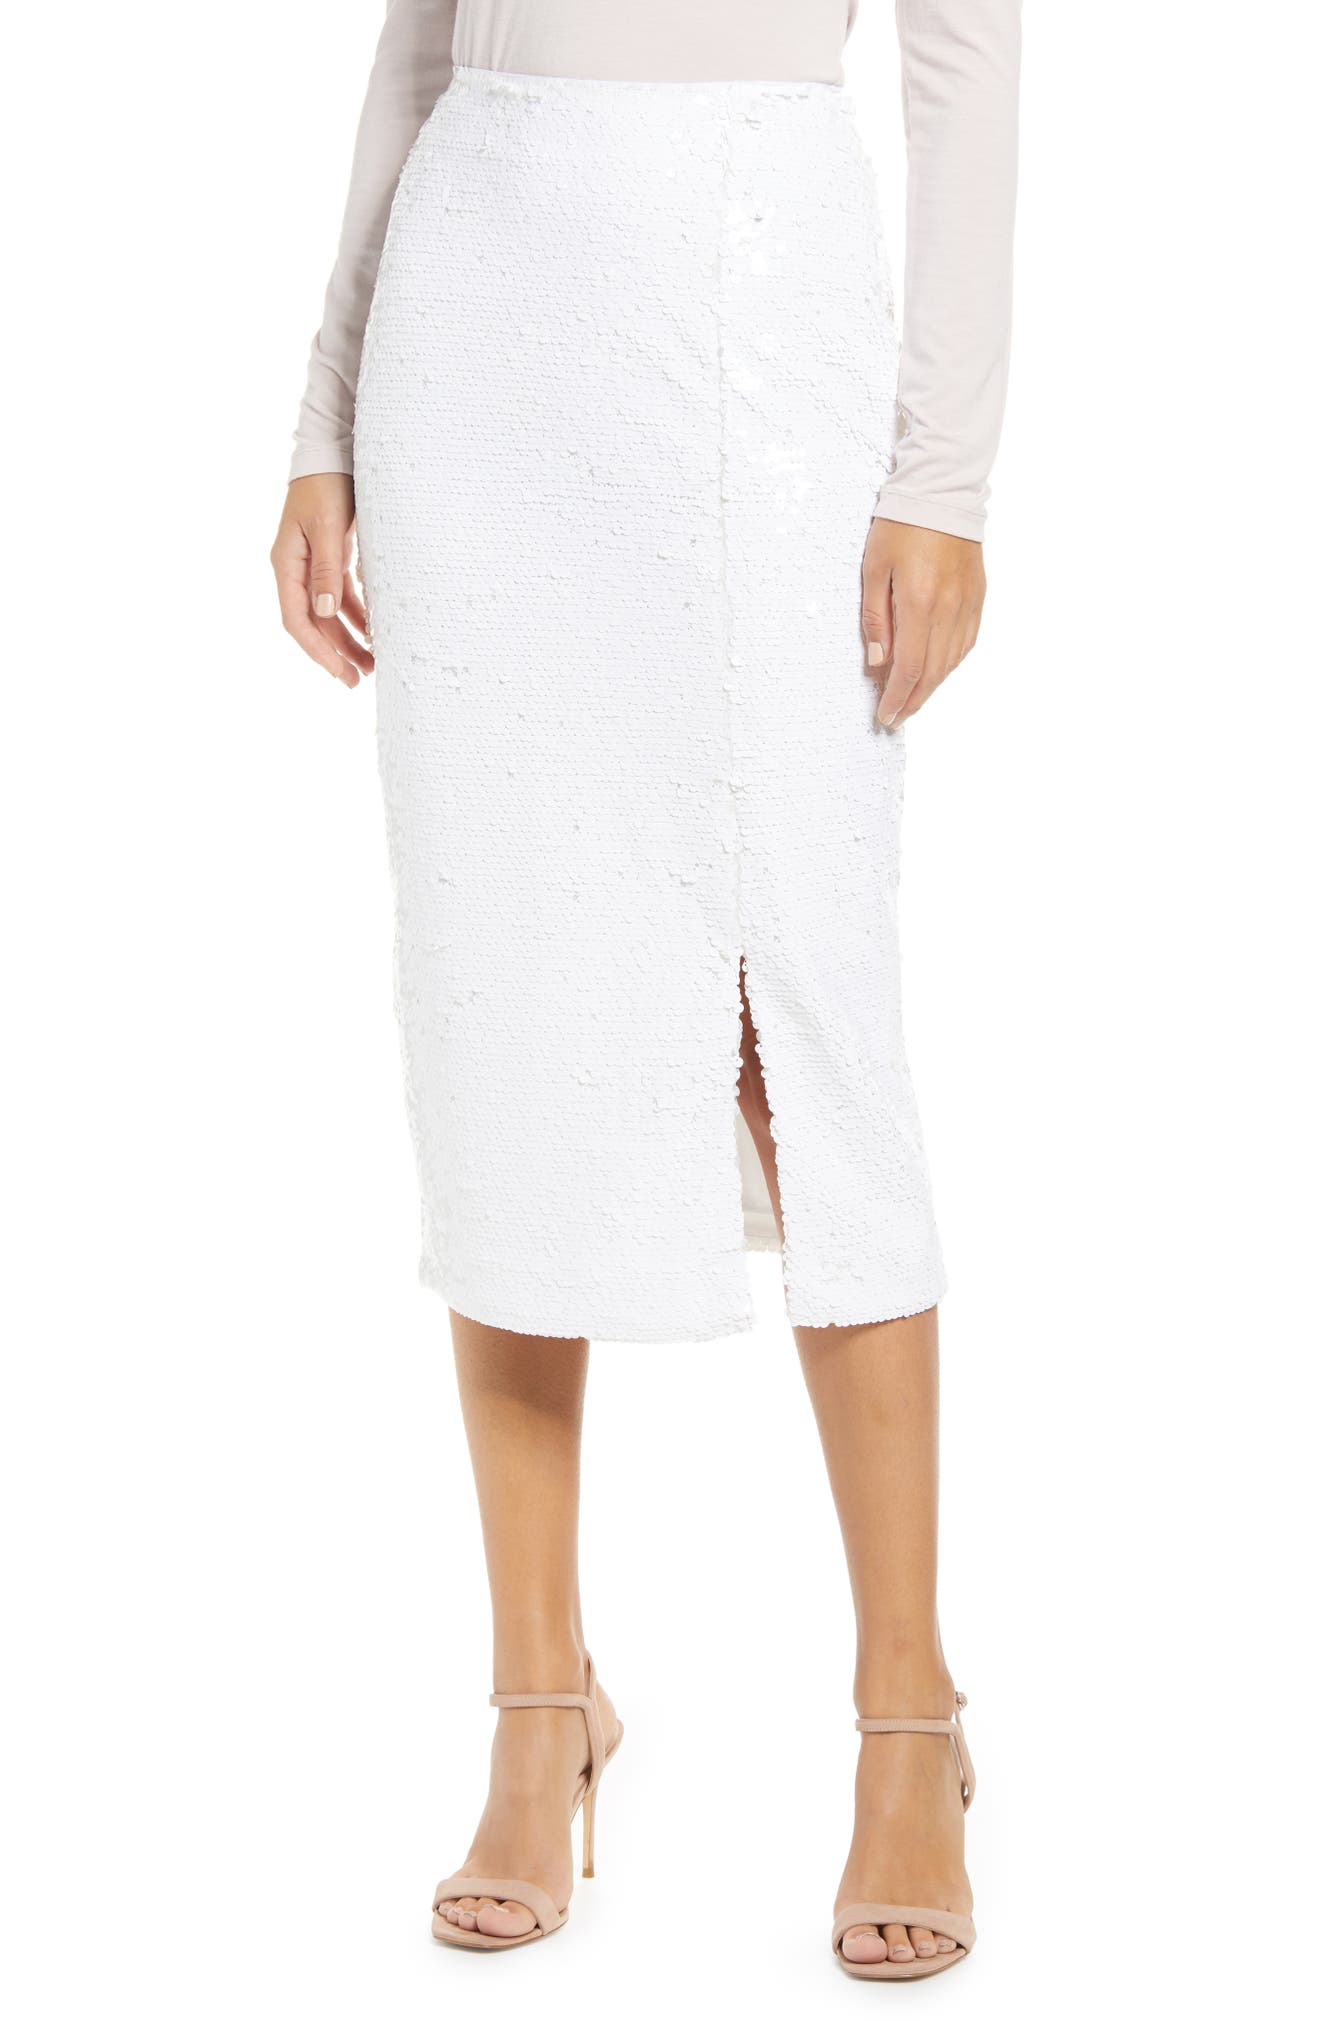 RACHEL PARCELL Sequin Pencil Skirt, Main, color, WHITE